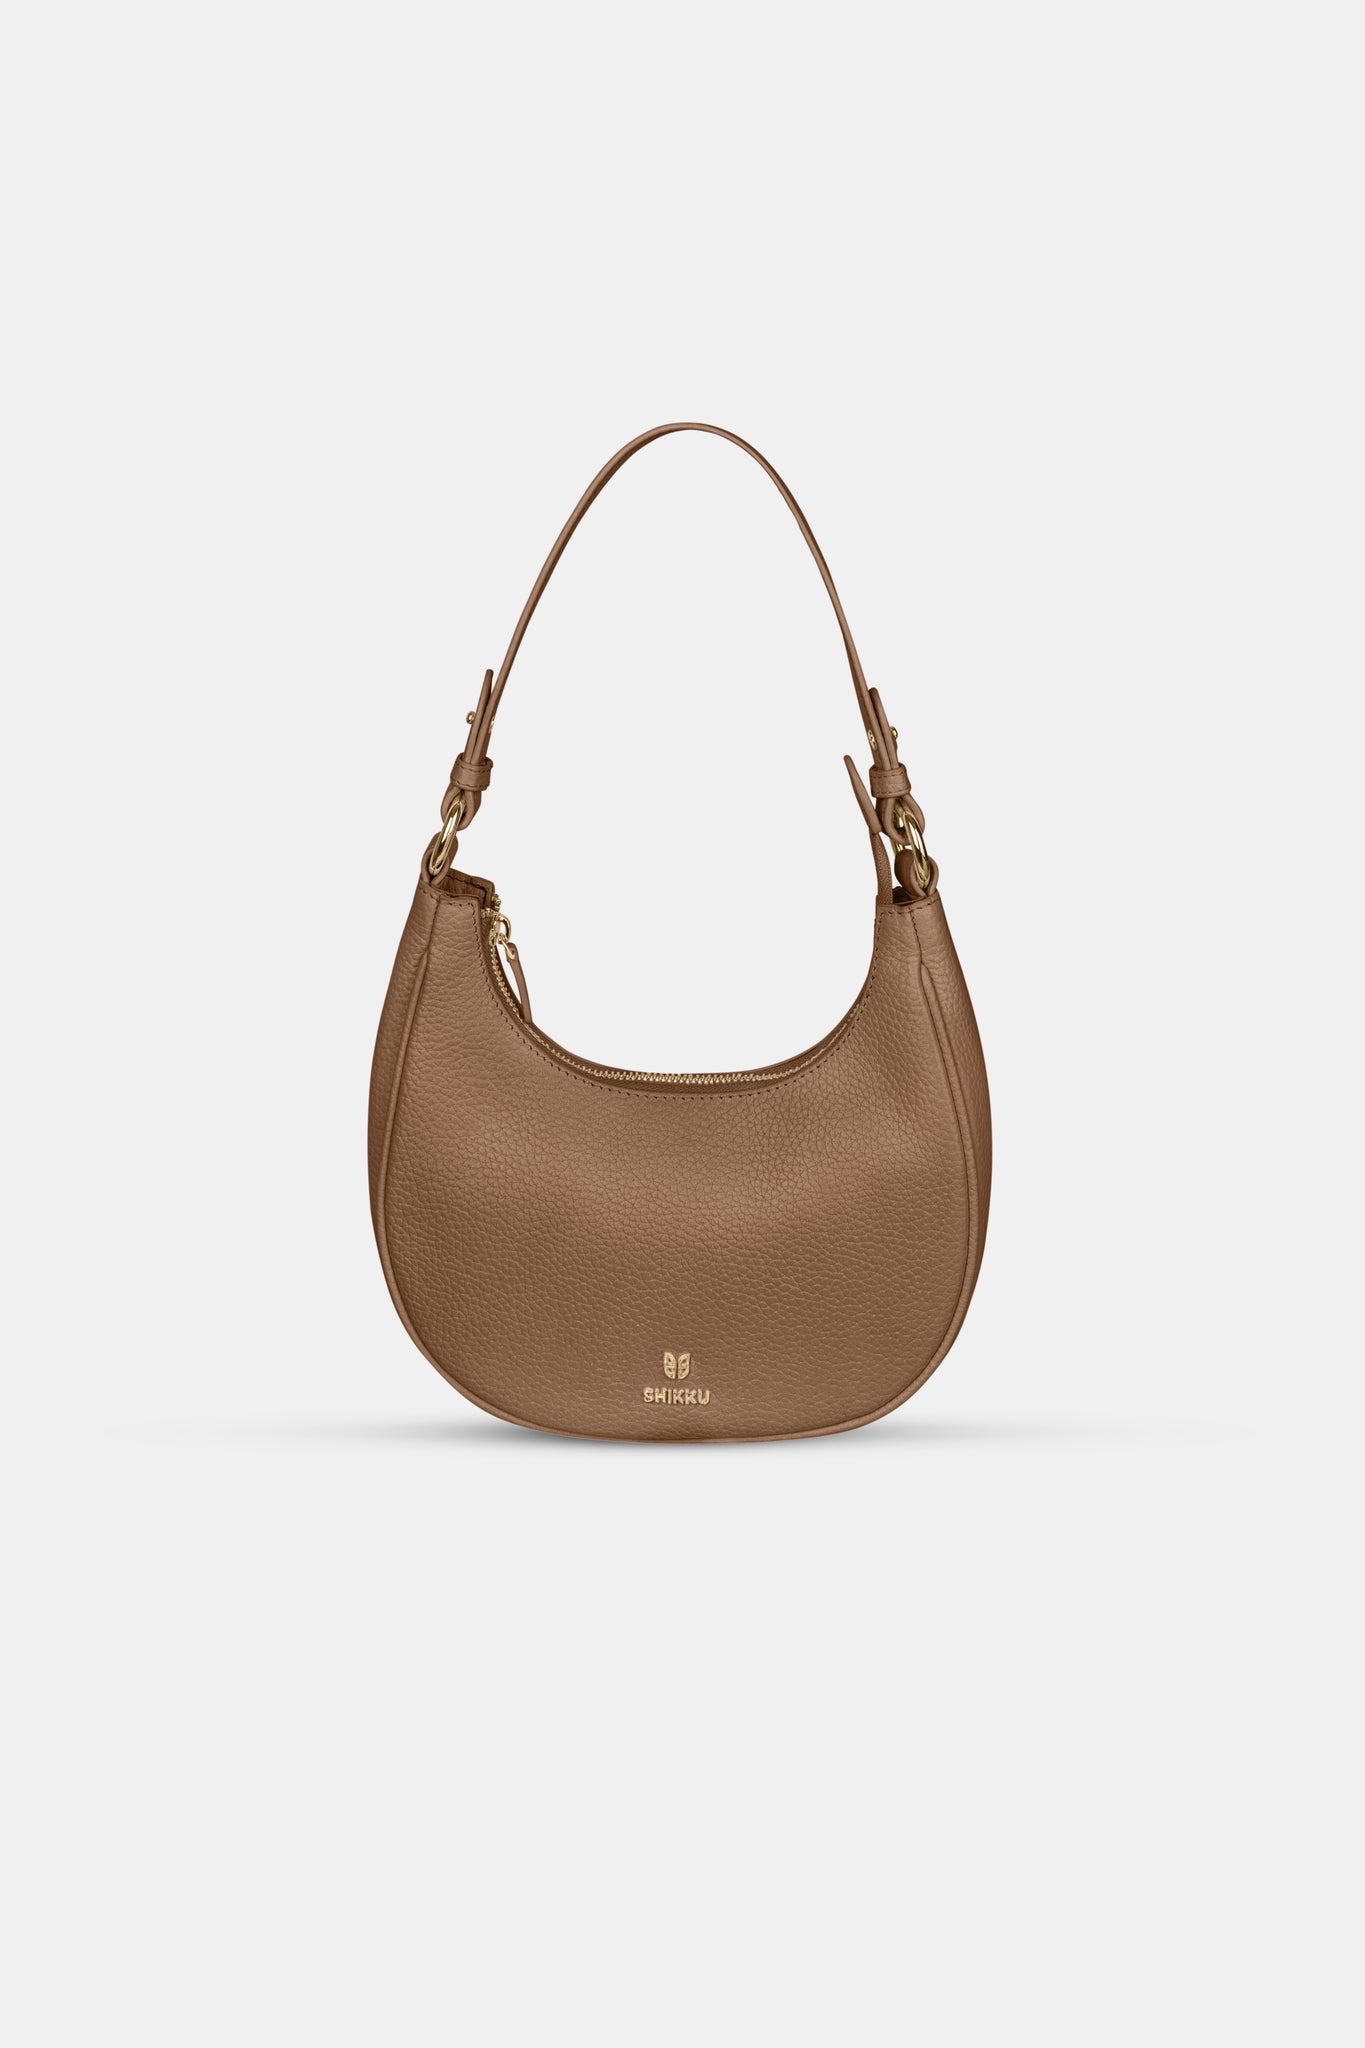 Hobo Leather Bag - Brown